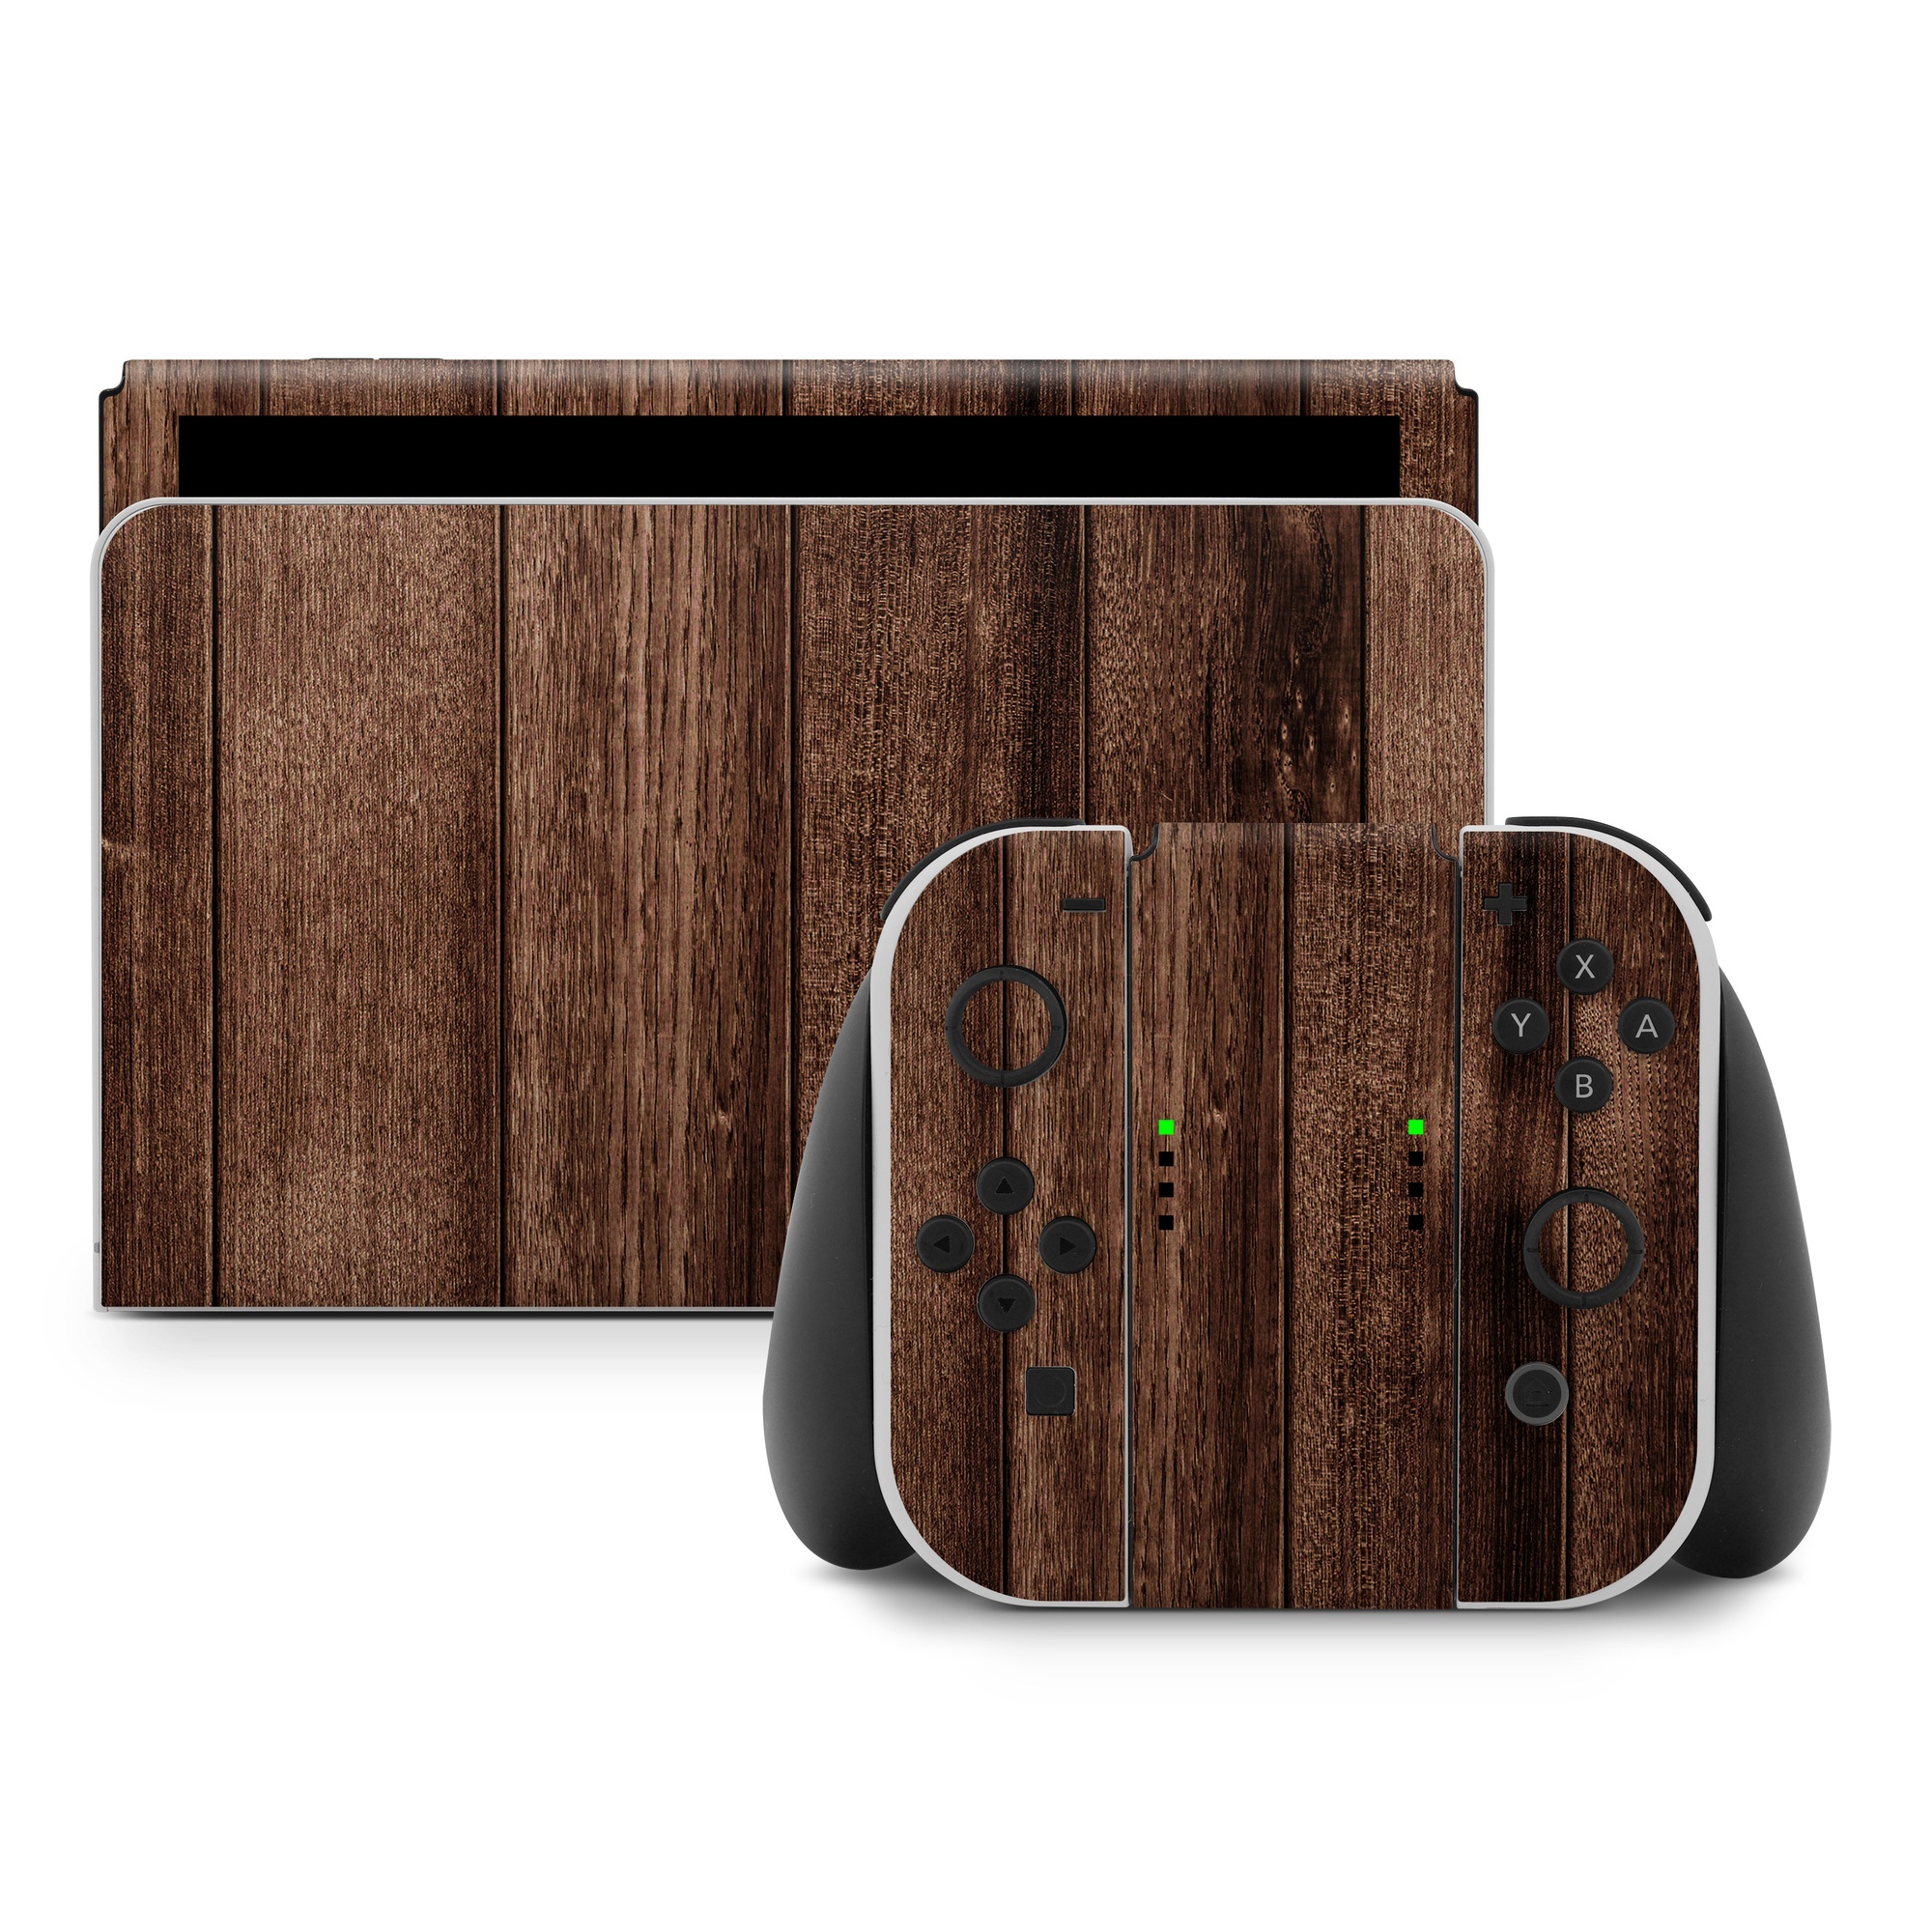 Nintendo Switch Skin design of Wood, Wood flooring, Hardwood, Wood stain, Plank, Brown, Floor, Line, Flooring, Pattern, with brown colors